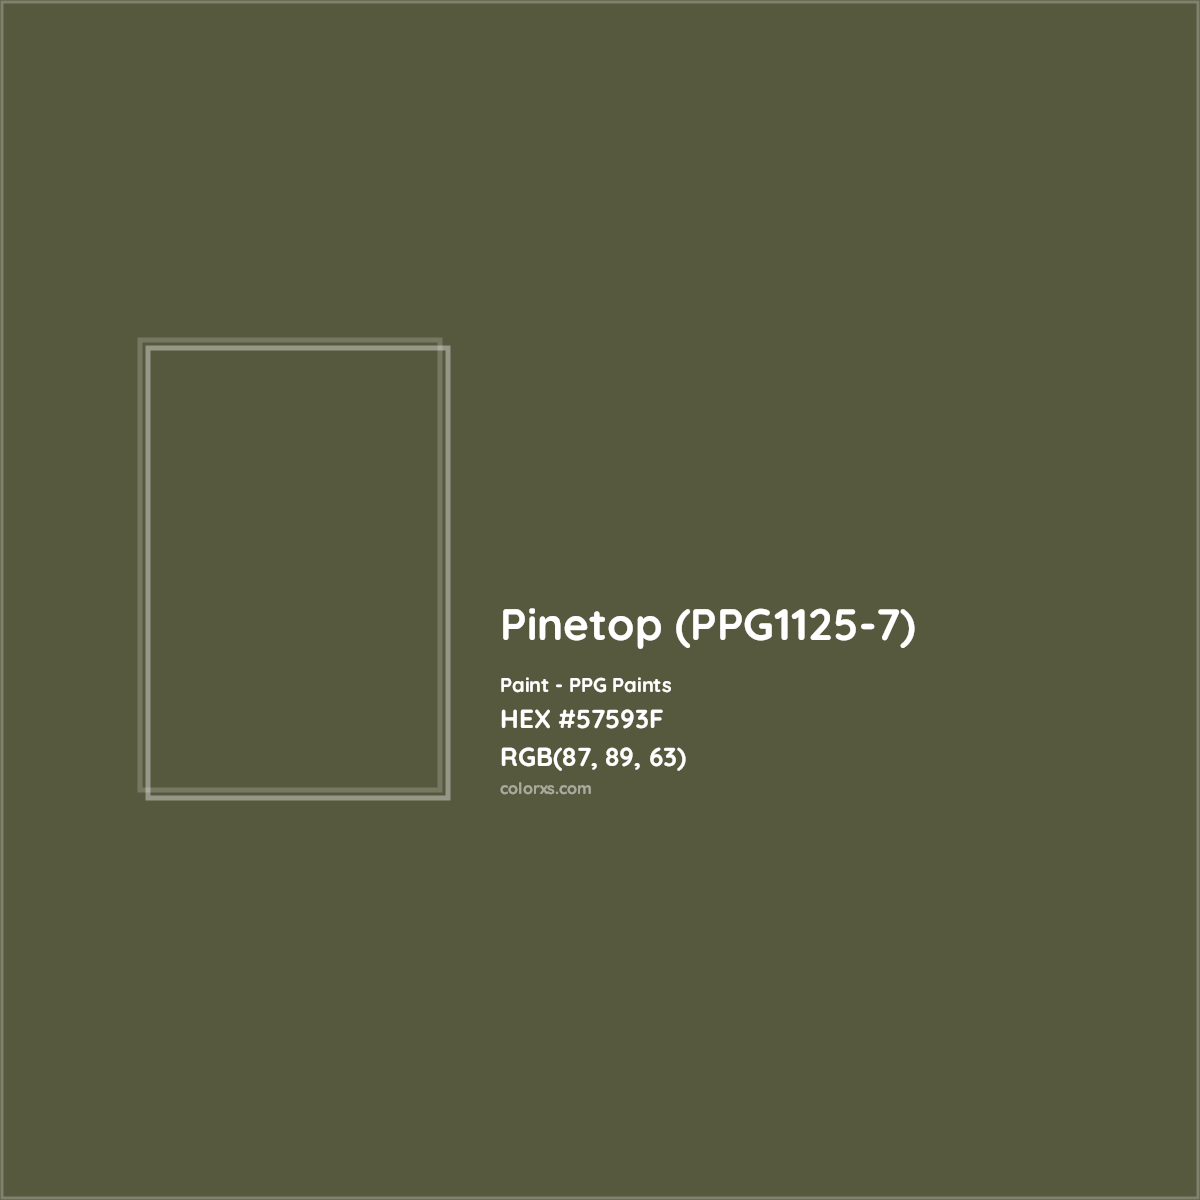 HEX #57593F Pinetop (PPG1125-7) Paint PPG Paints - Color Code